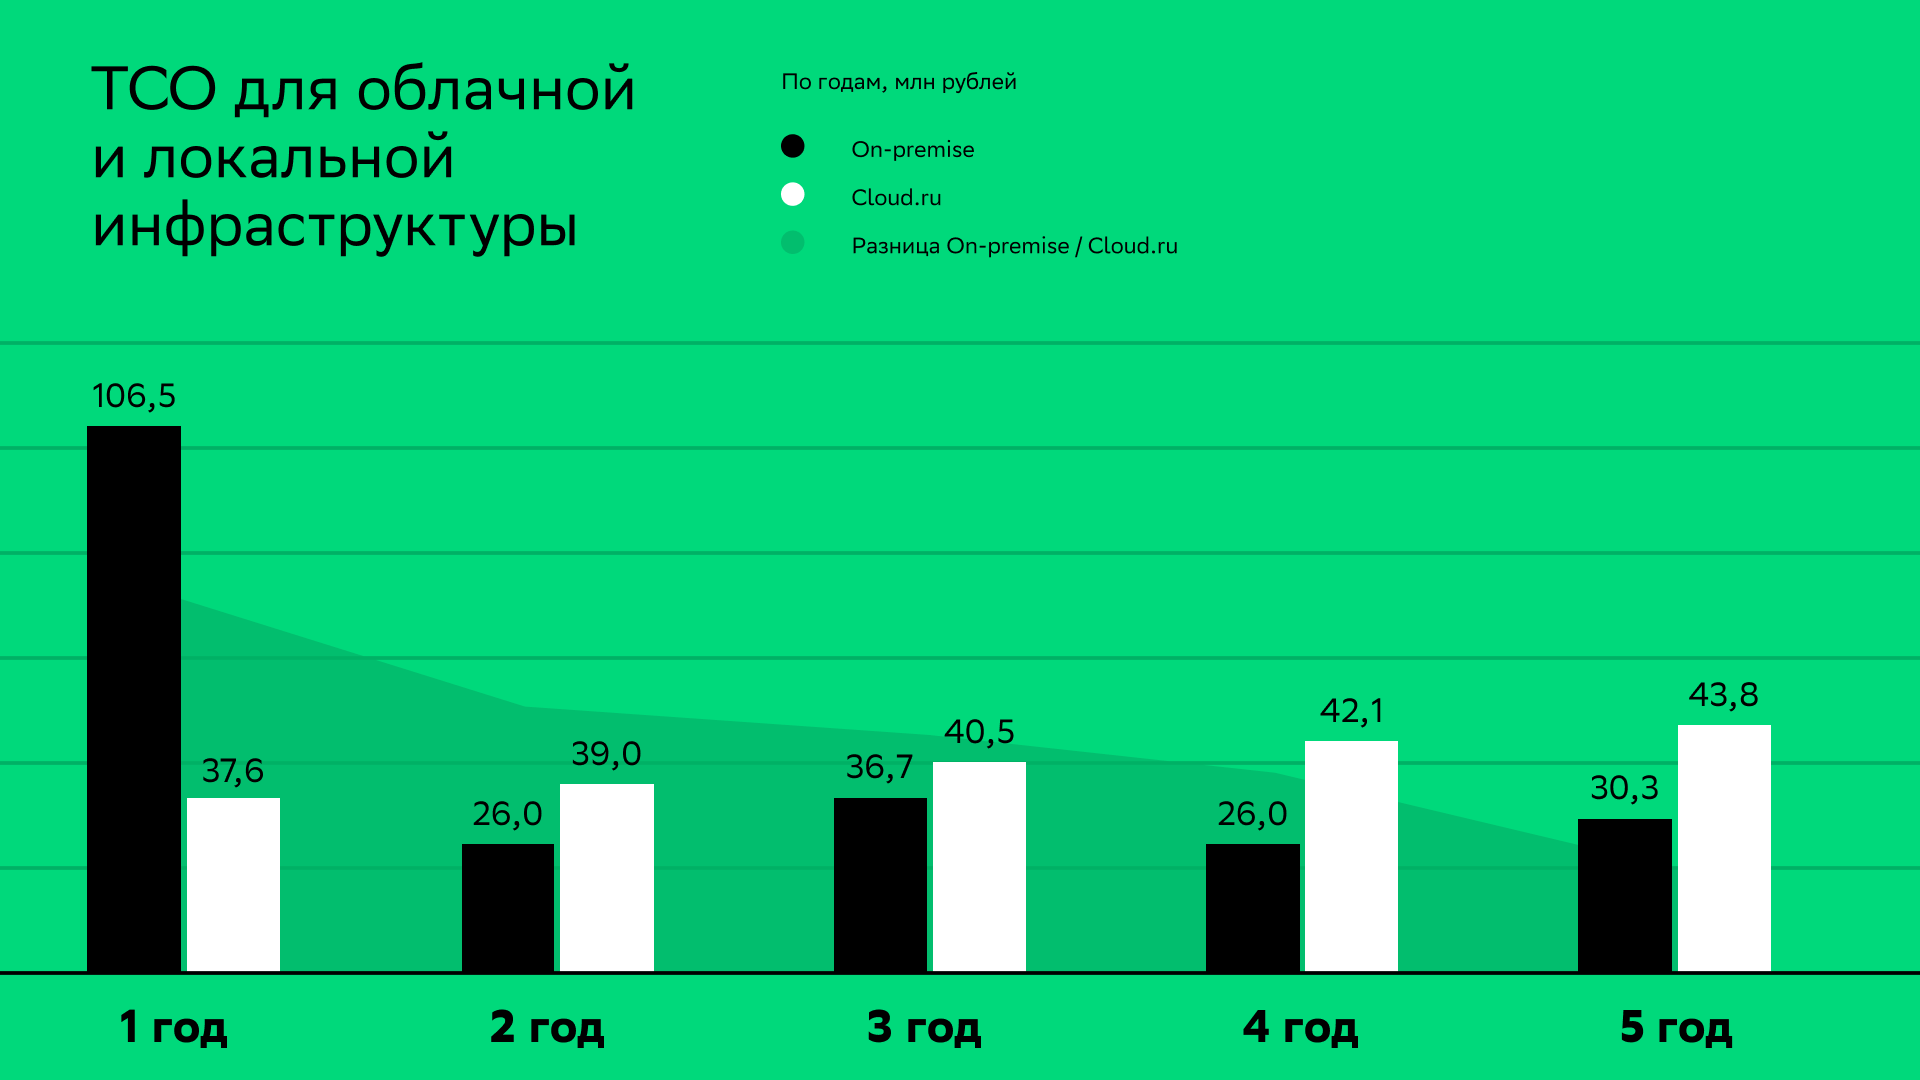 ТСО для облачной и локальной инфраструктуры по годам, млн рублей